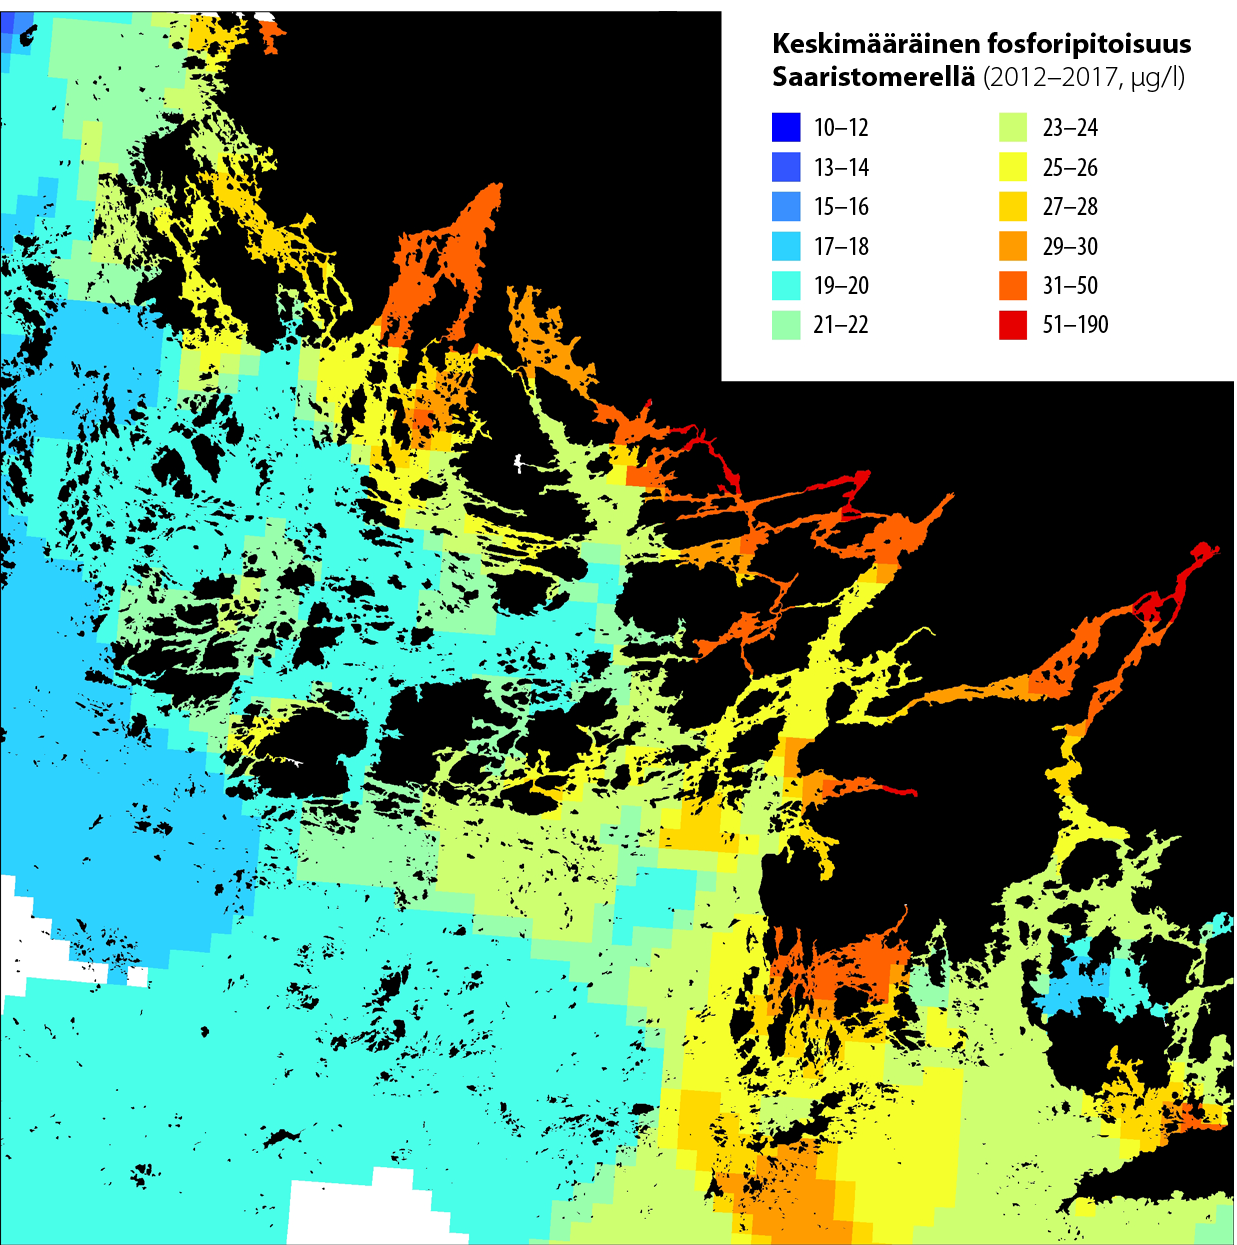 Kartta Saaristomeren keskimääräisestä fosforipitoisuudesta 2012-2017